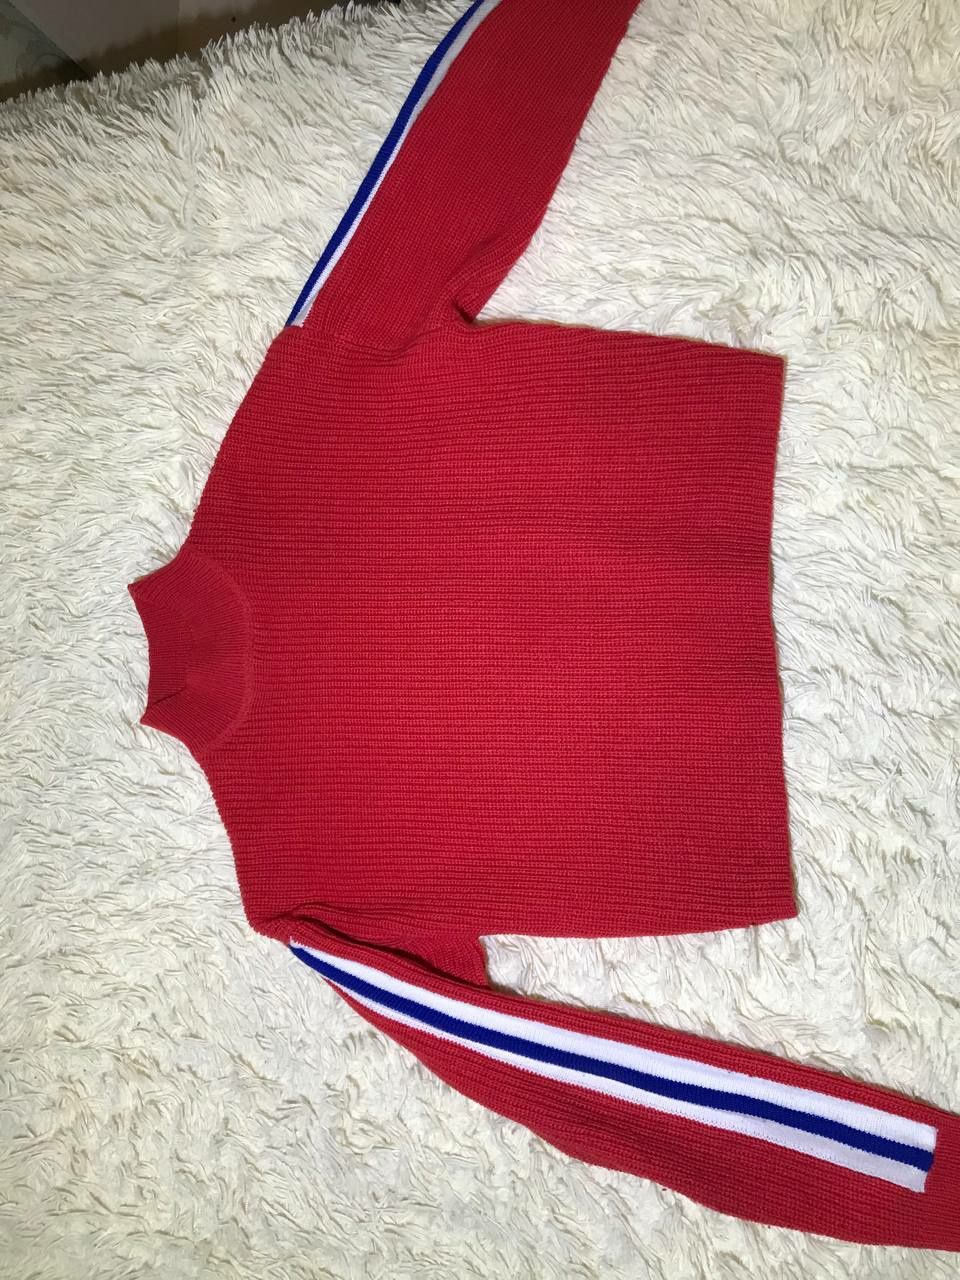 Червоний светр з синьо-білими полосками. H&M